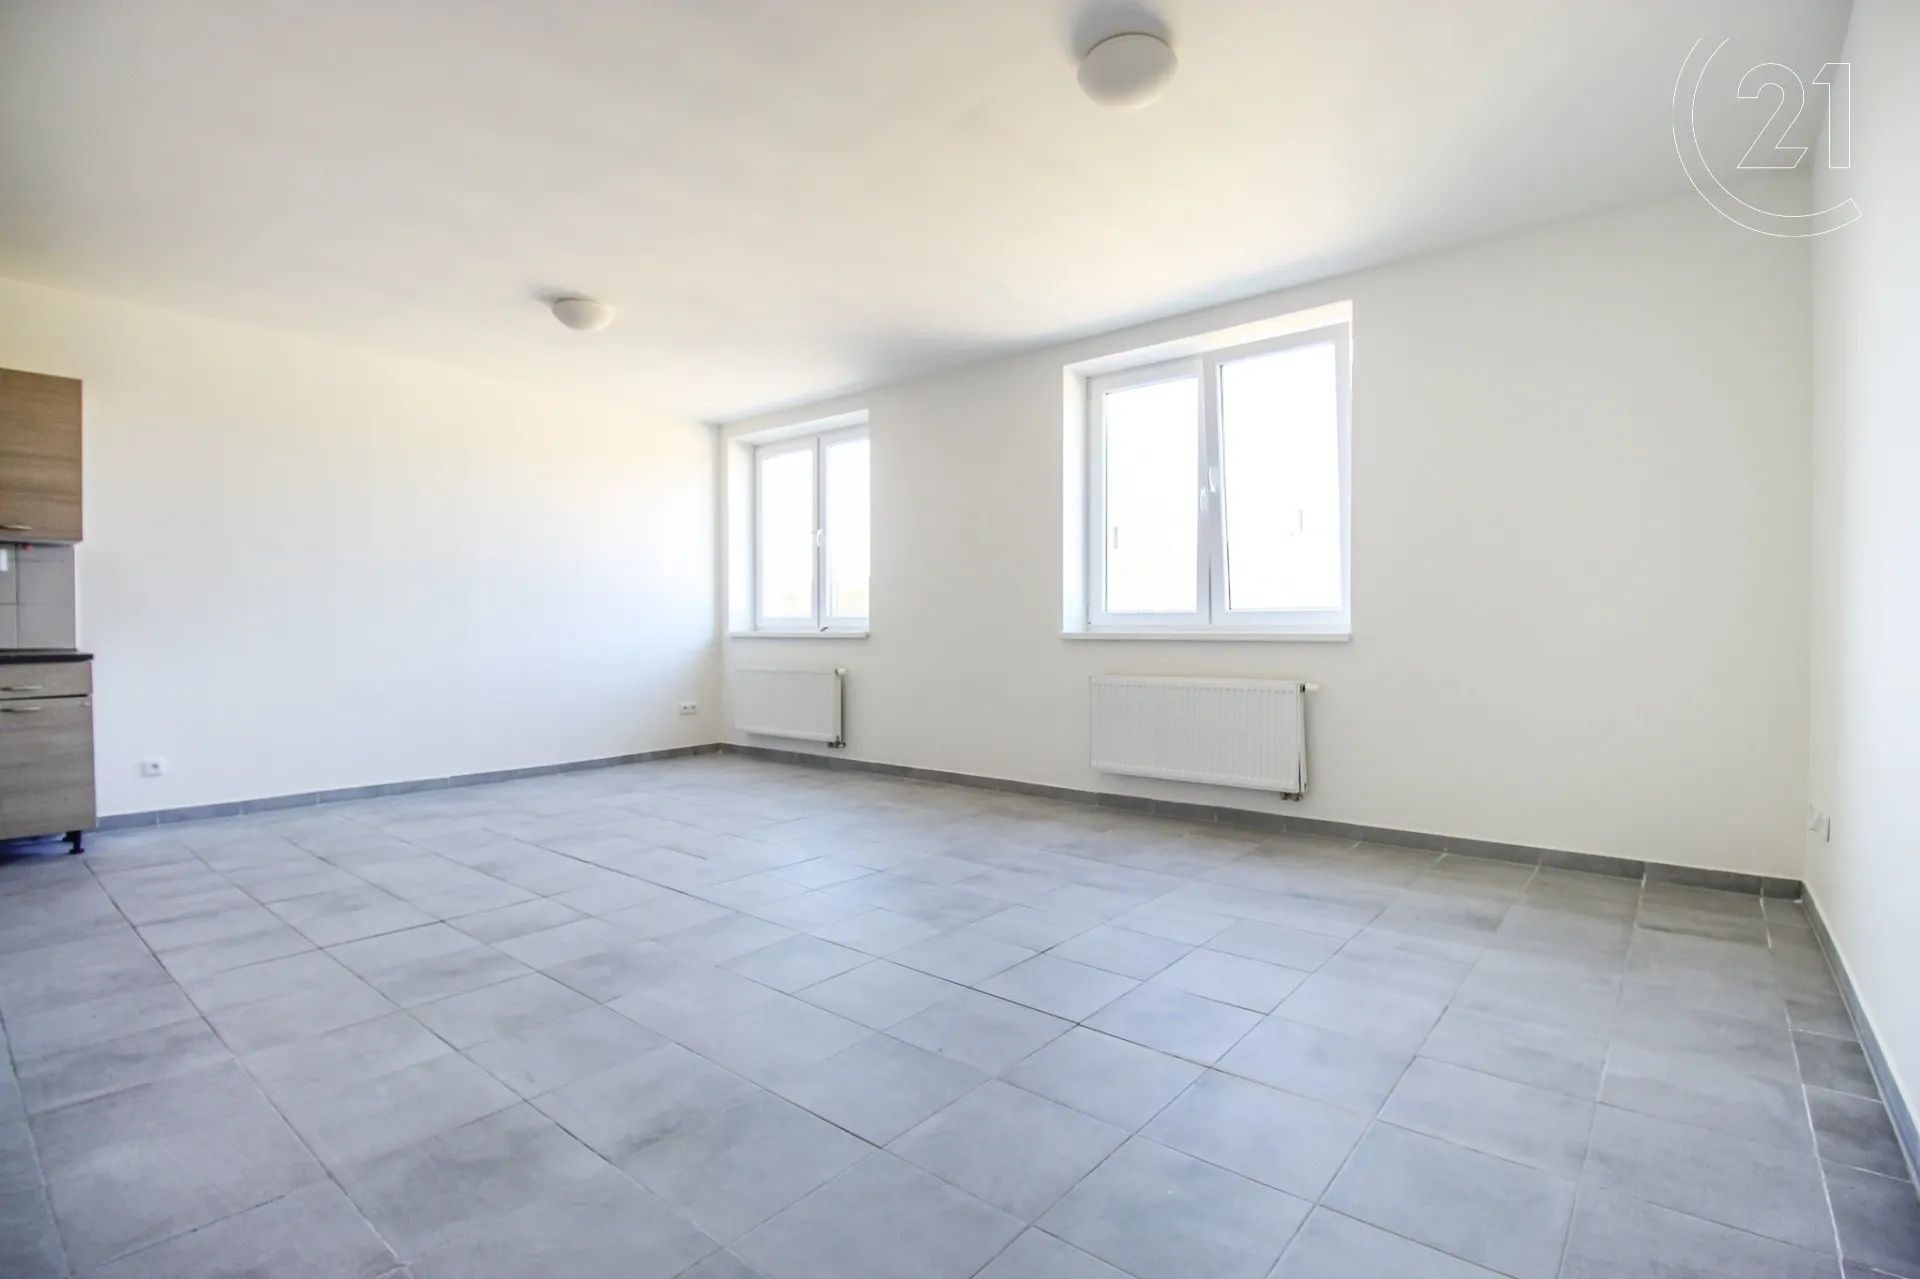 prázdná místnost s radiátor, kachličková podlaha, a přirozené světlo